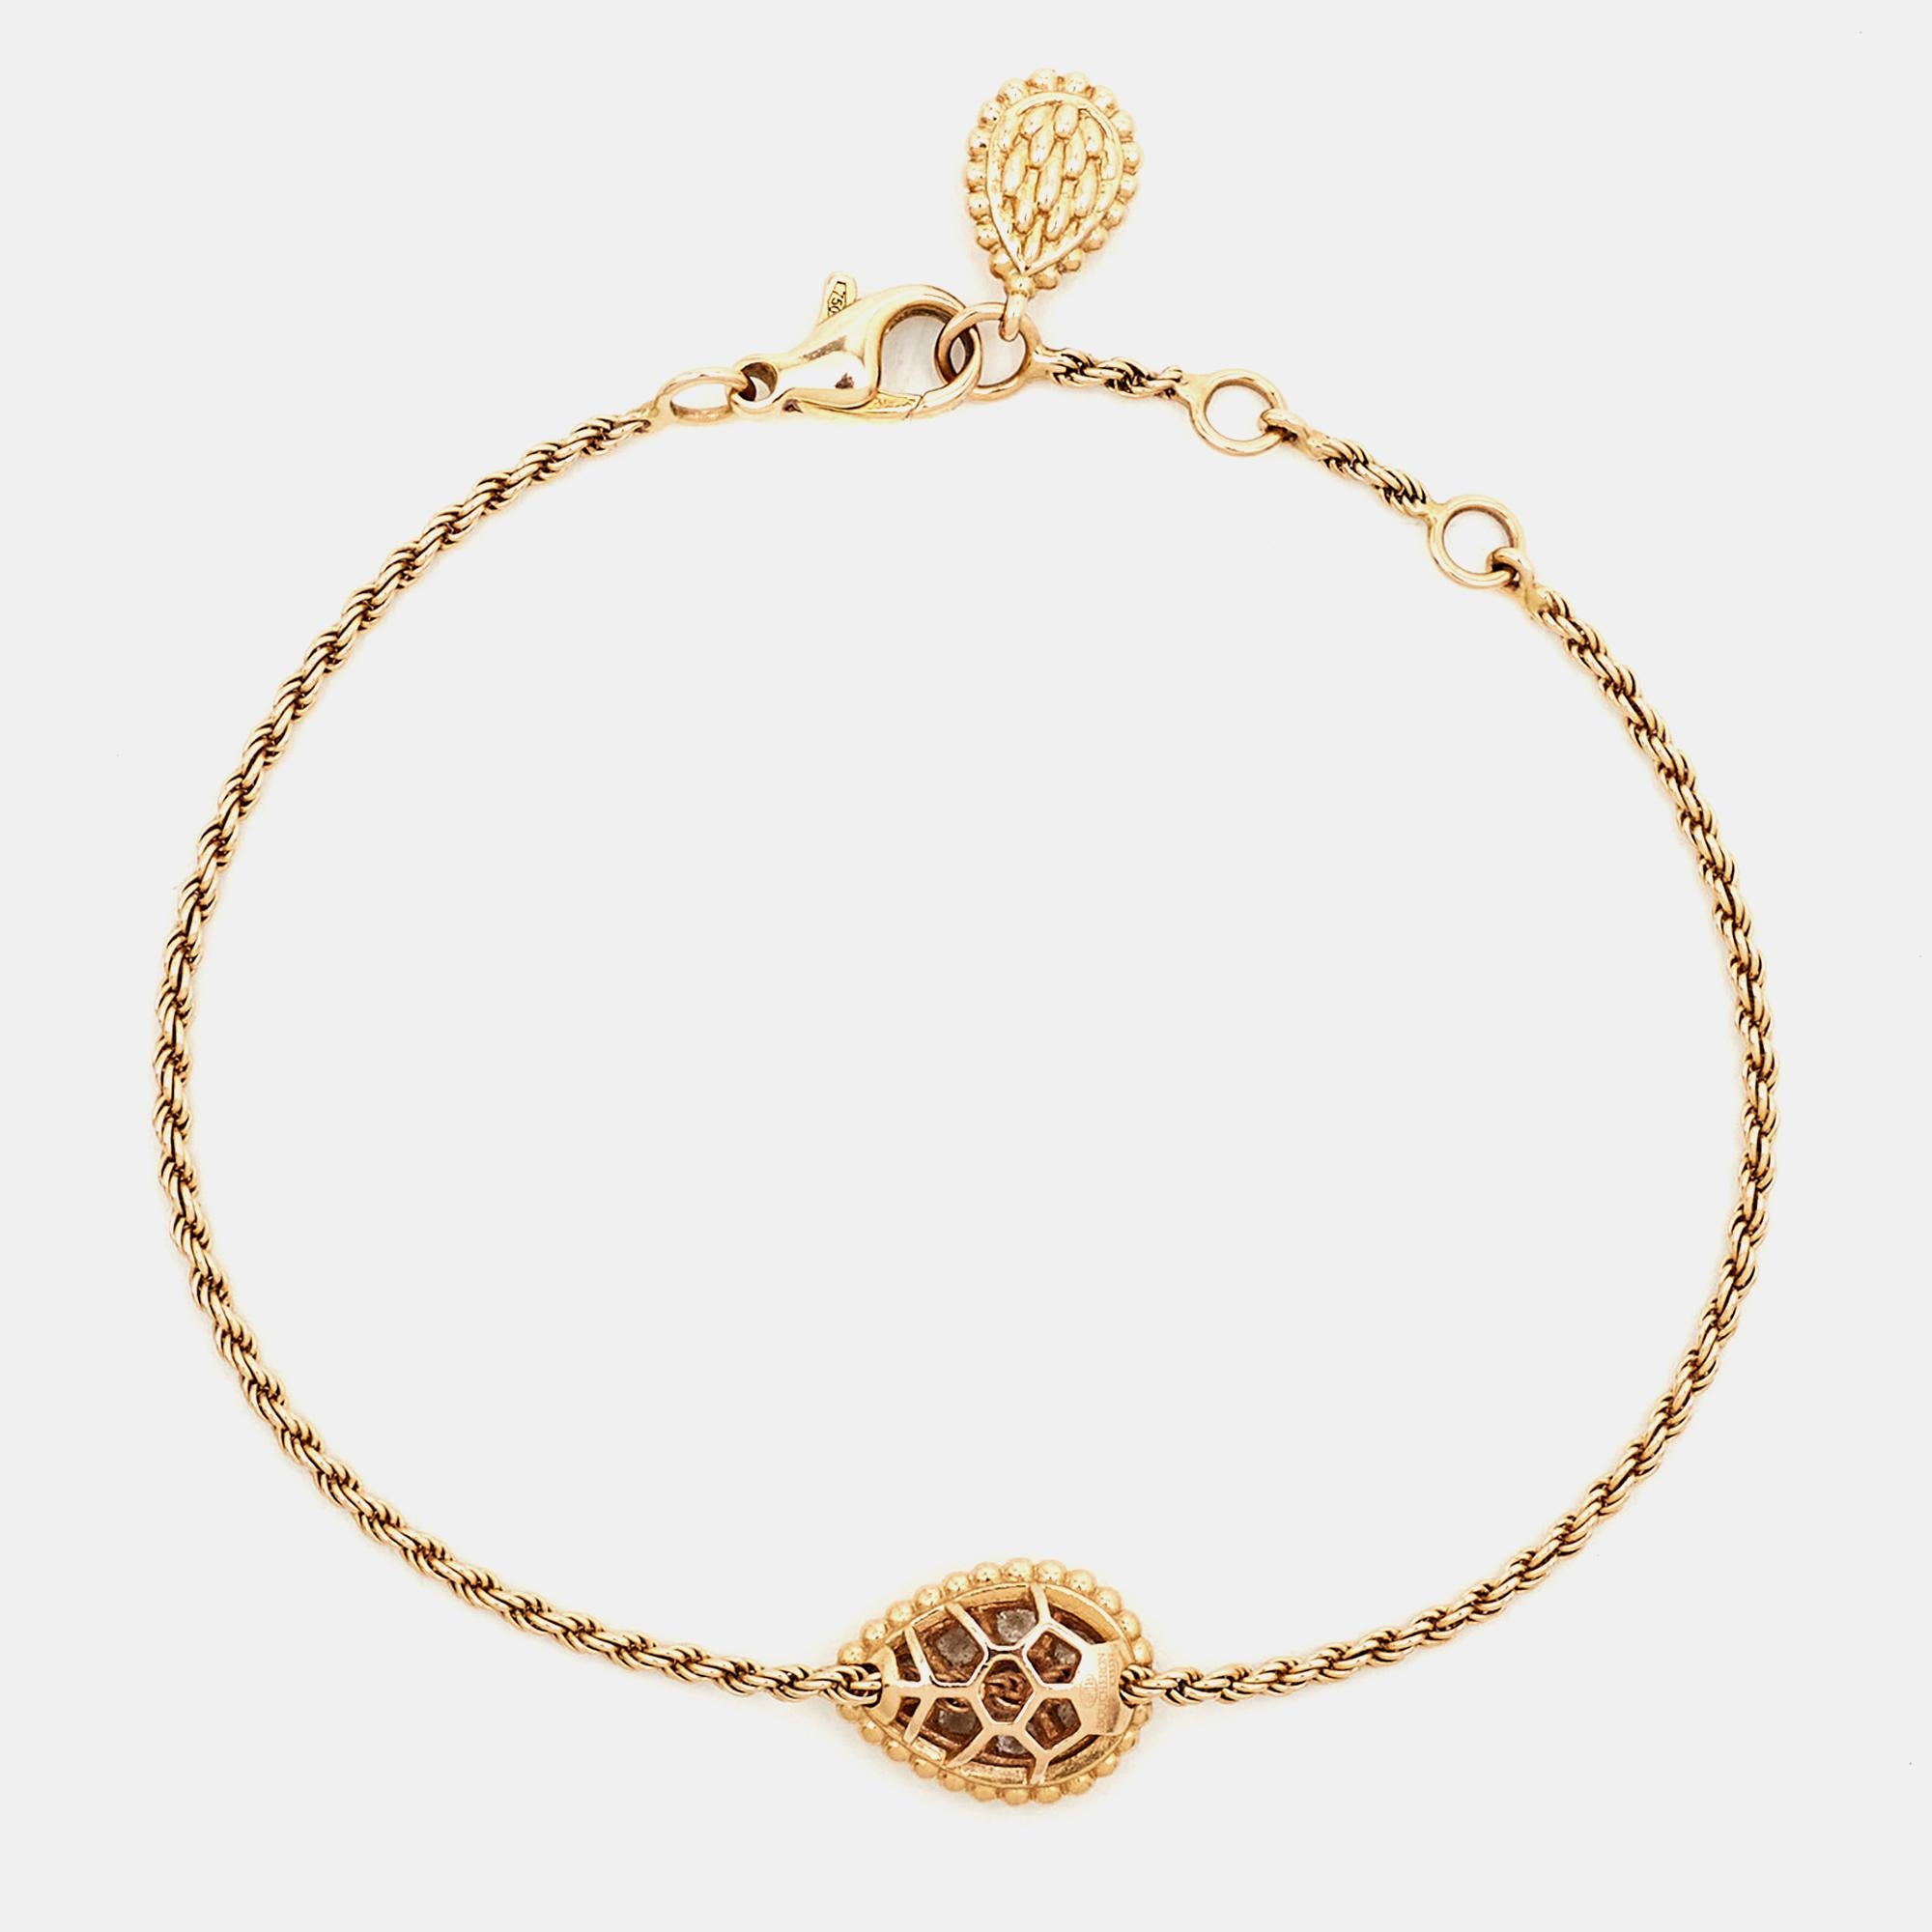 Le bracelet Boucheron est un bijou envoûtant qui respire l'élégance et le charme. Fabriqué en luxueux or rose 18 carats, ce bracelet présente un étonnant motif de serpent orné de diamants éblouissants. Son design complexe et sa fabrication exquise